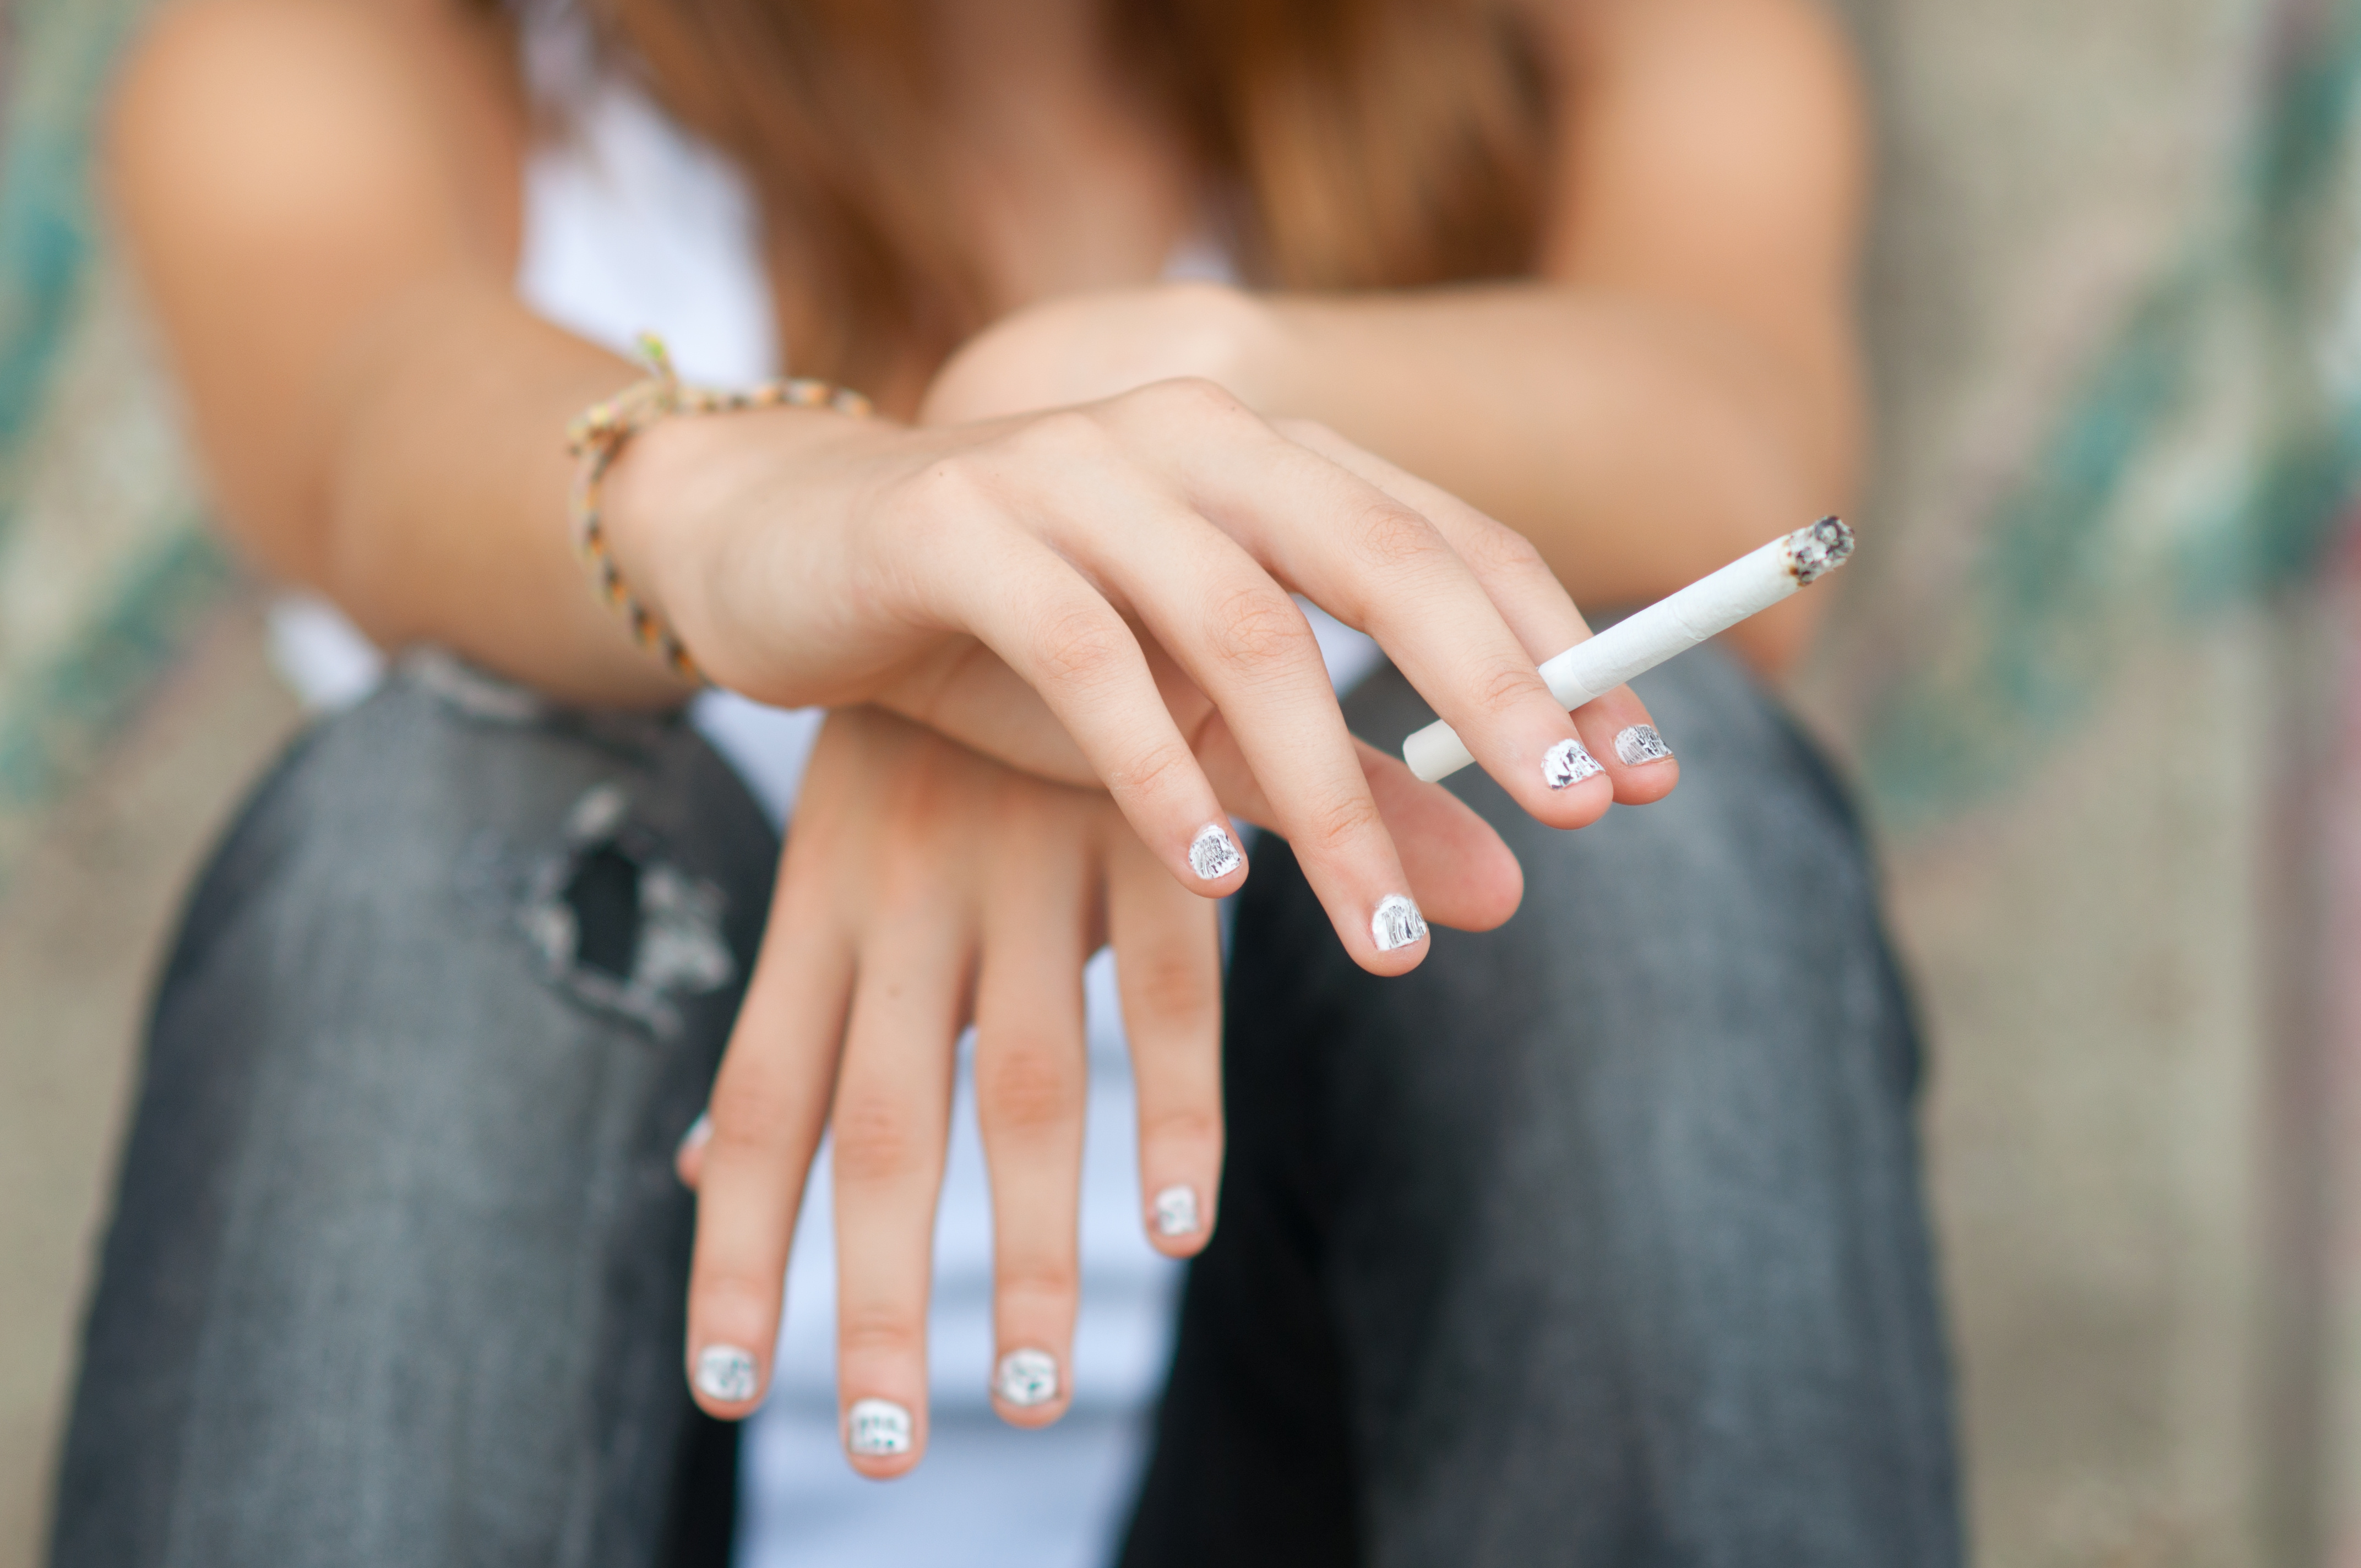 Les femmes sont de plus en plus exposées au cancer, notamment en raison du tabagisme. © Solid photos, Adobe Stock